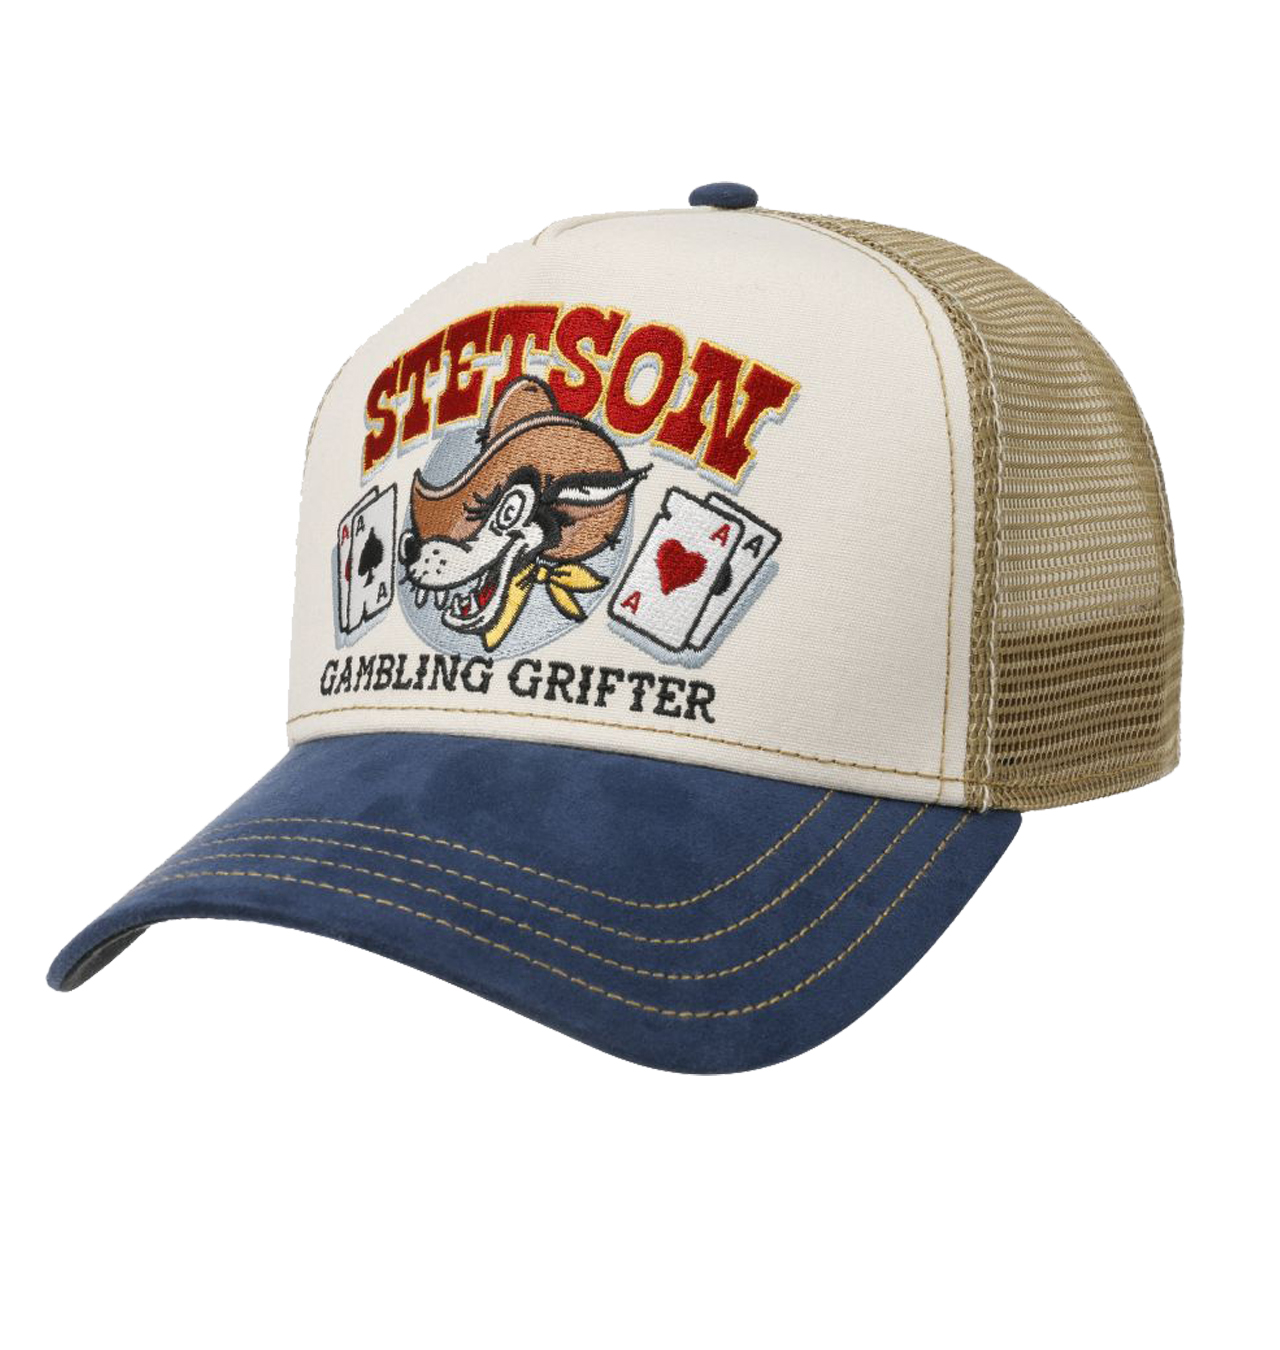 Stetson - Gambling Grifter Trucker Cap - Beige